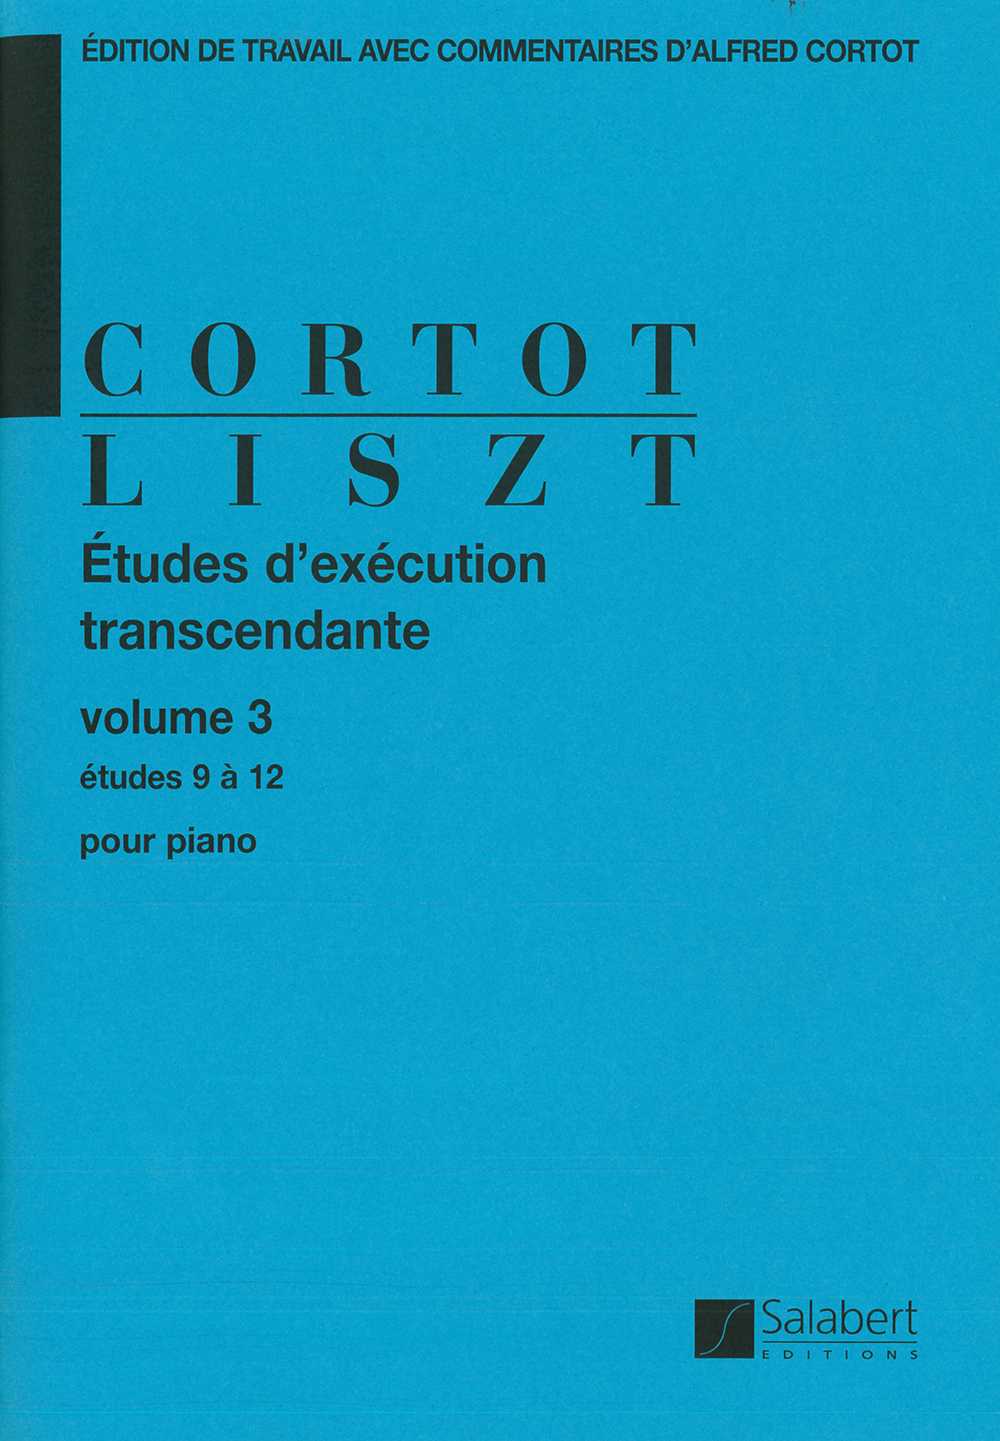 Franz Liszt: tudes d'excution transcendante volume 3: Piano